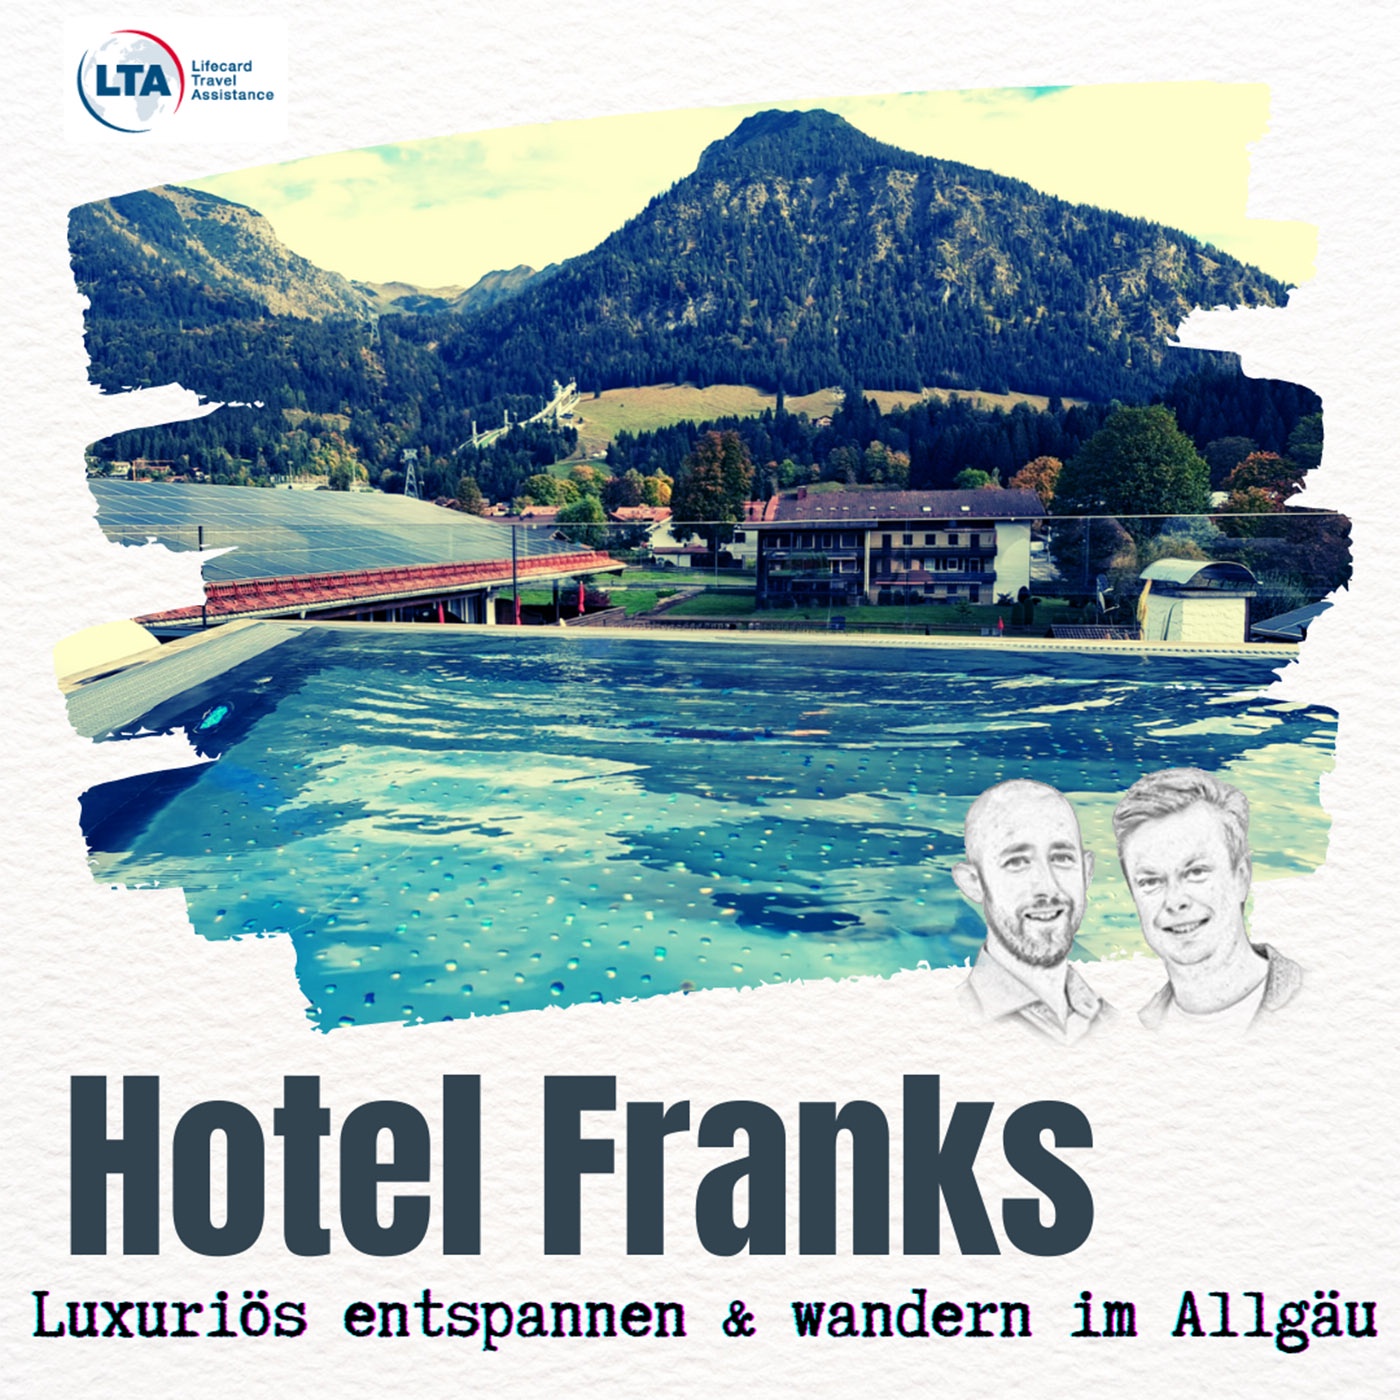 Hotel Franks im Allgäu: Luxuriös entspannen und beim Wandern an die Grenzen gehen